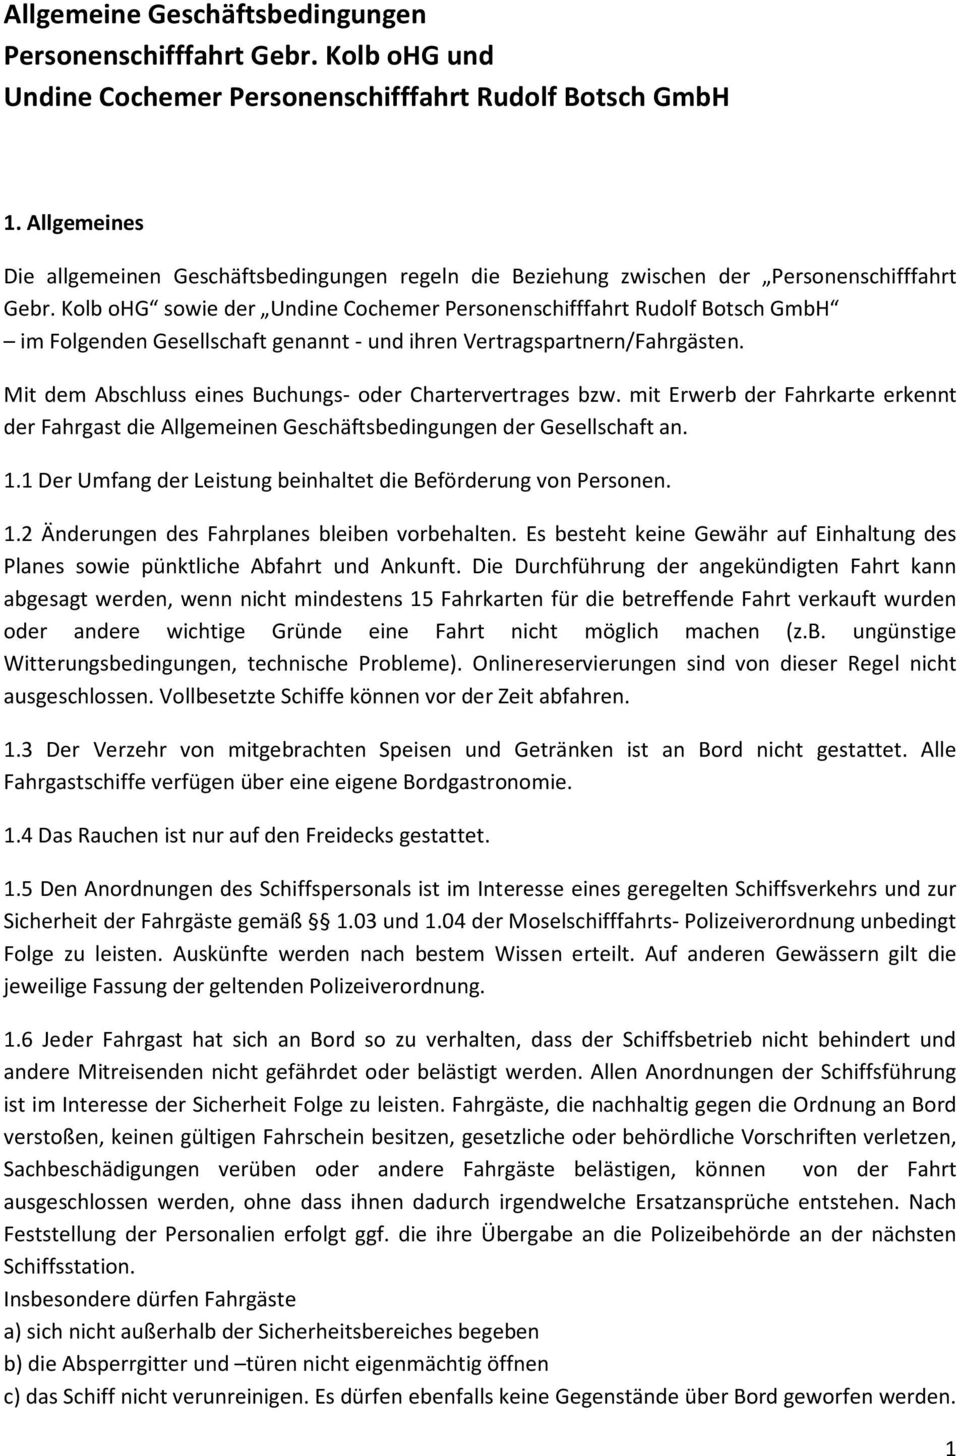 Kolb ohg sowie der Undine Cochemer Personenschifffahrt Rudolf Botsch GmbH im Folgenden Gesellschaft genannt - und ihren Vertragspartnern/Fahrgästen.